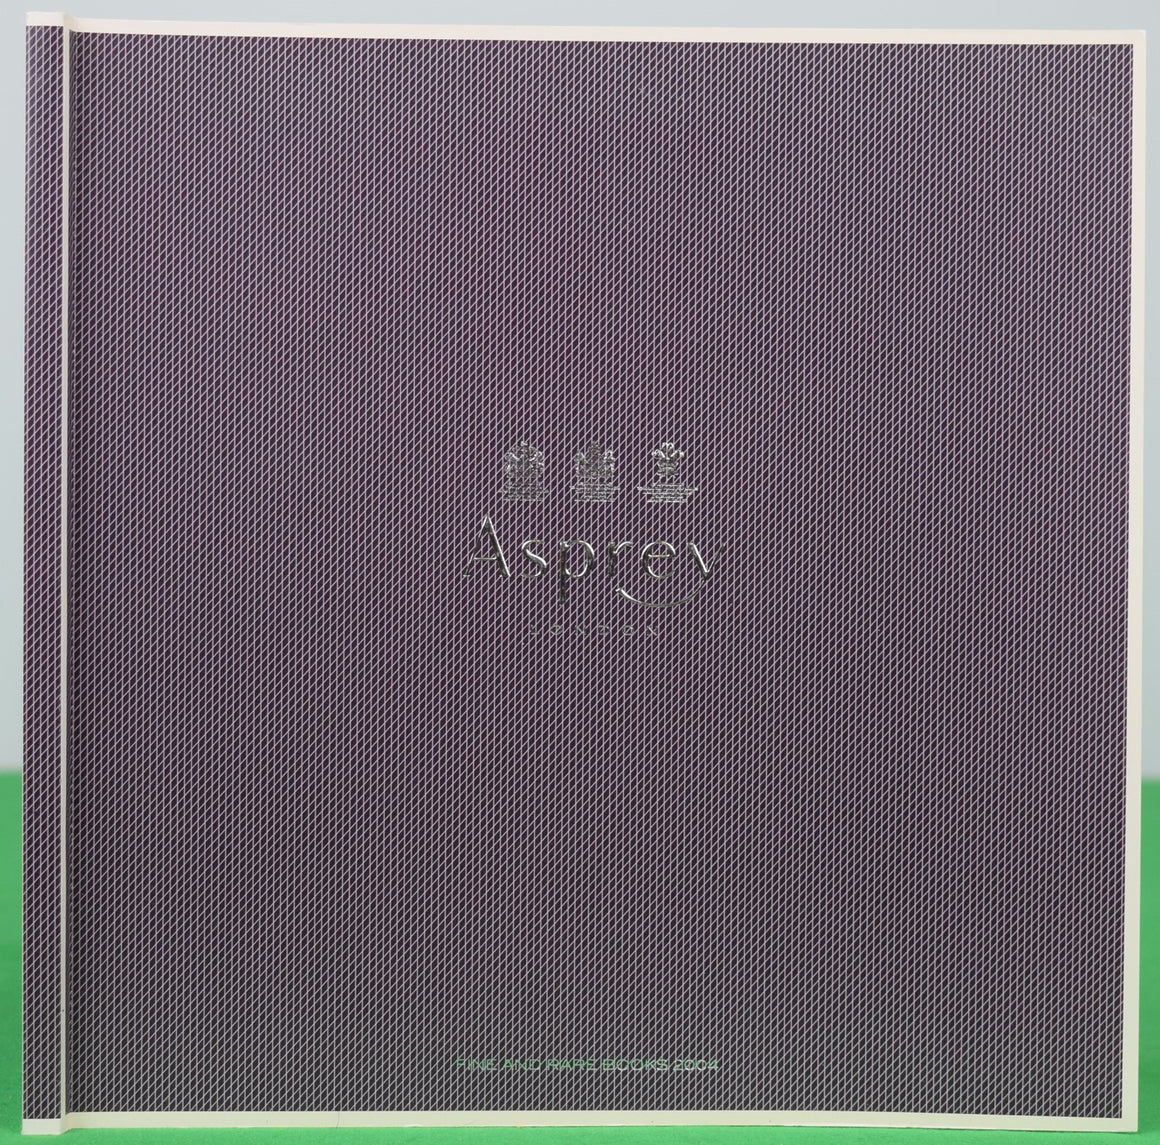 Asprey: Fine and Rare Books 2004